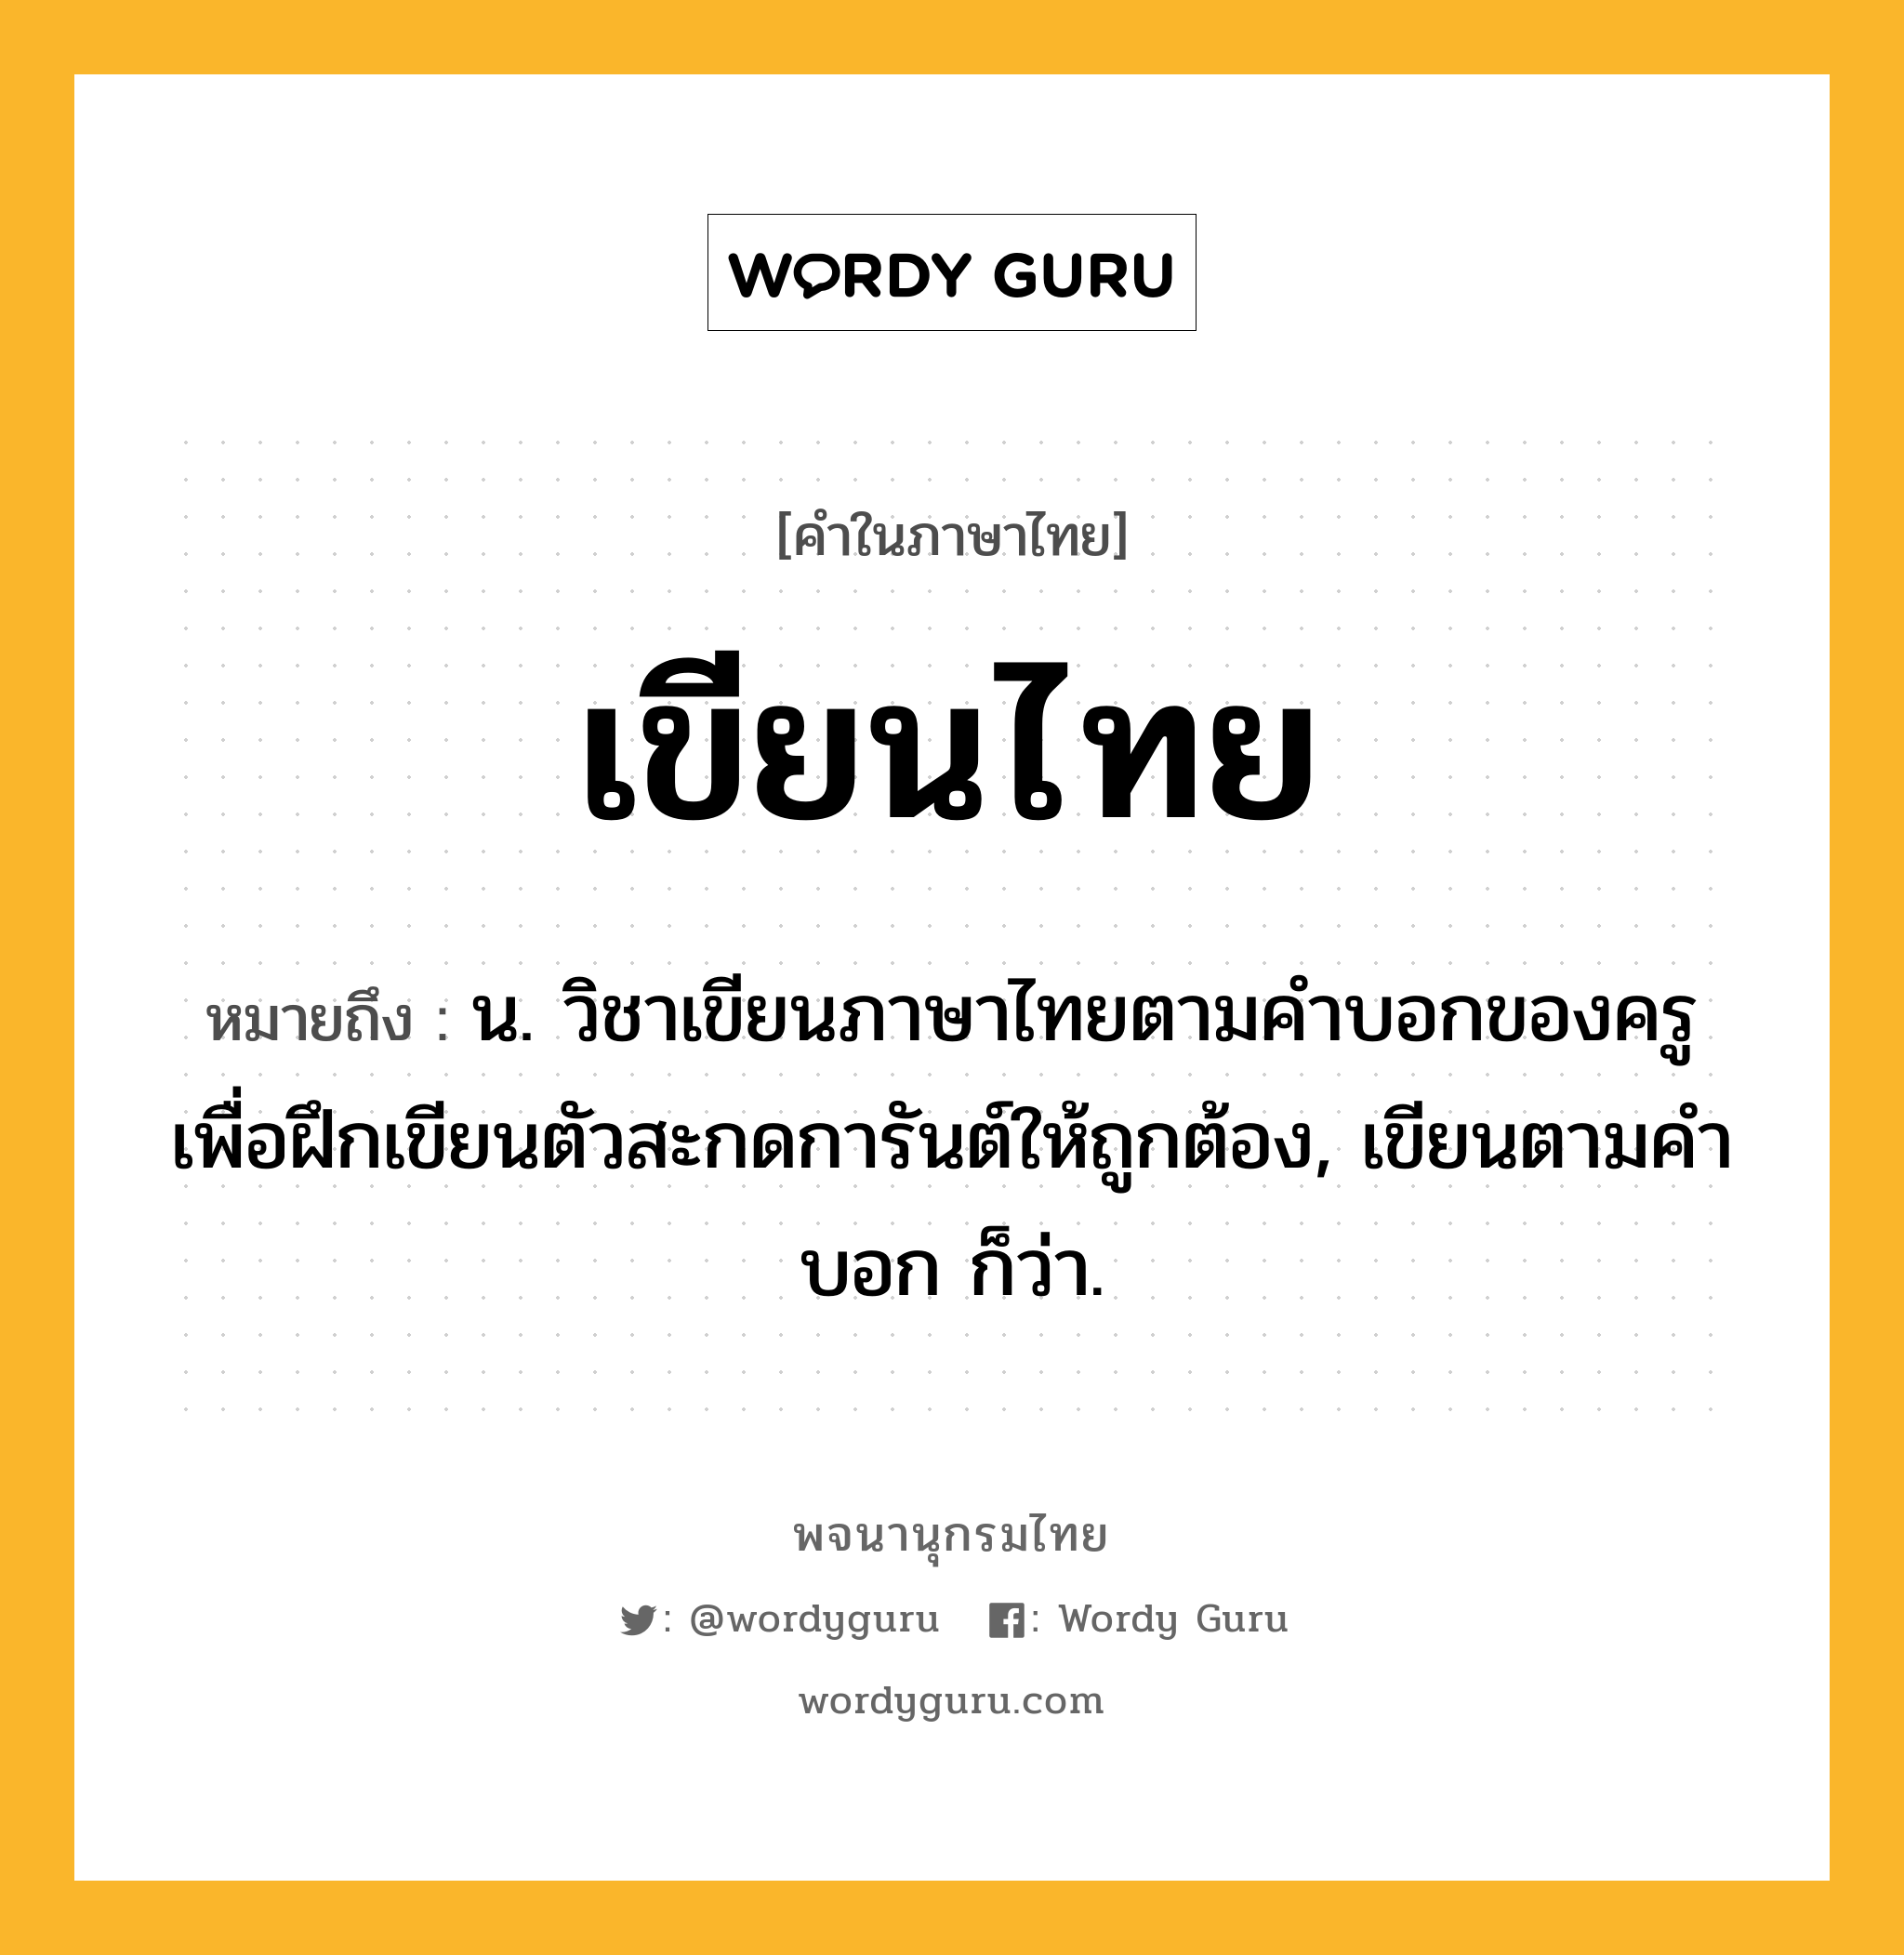 เขียนไทย ความหมาย หมายถึงอะไร?, คำในภาษาไทย เขียนไทย หมายถึง น. วิชาเขียนภาษาไทยตามคําบอกของครู เพื่อฝึกเขียนตัวสะกดการันต์ให้ถูกต้อง, เขียนตามคำบอก ก็ว่า.